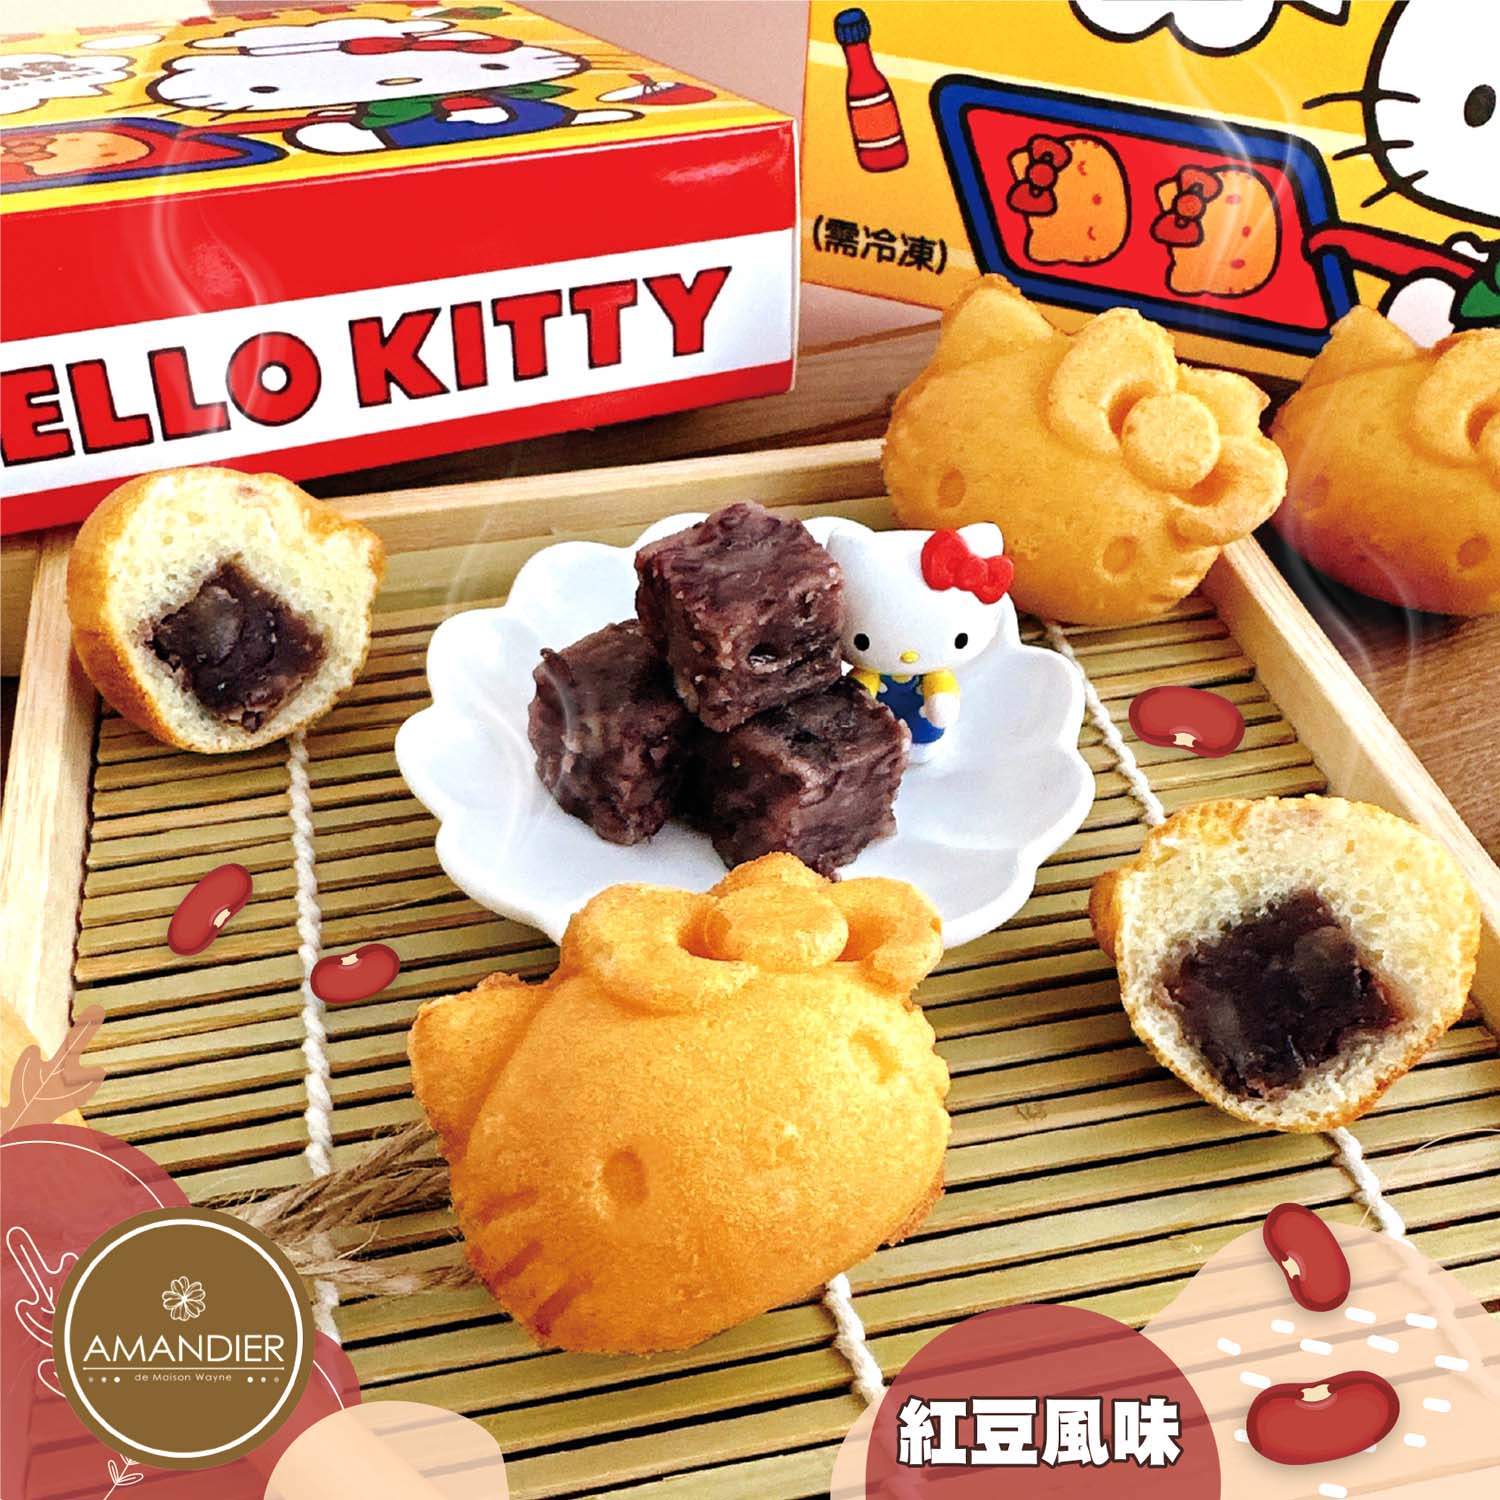 【雅蒙蒂】Hello Kitty mini燒(卡士達/紅豆風味)